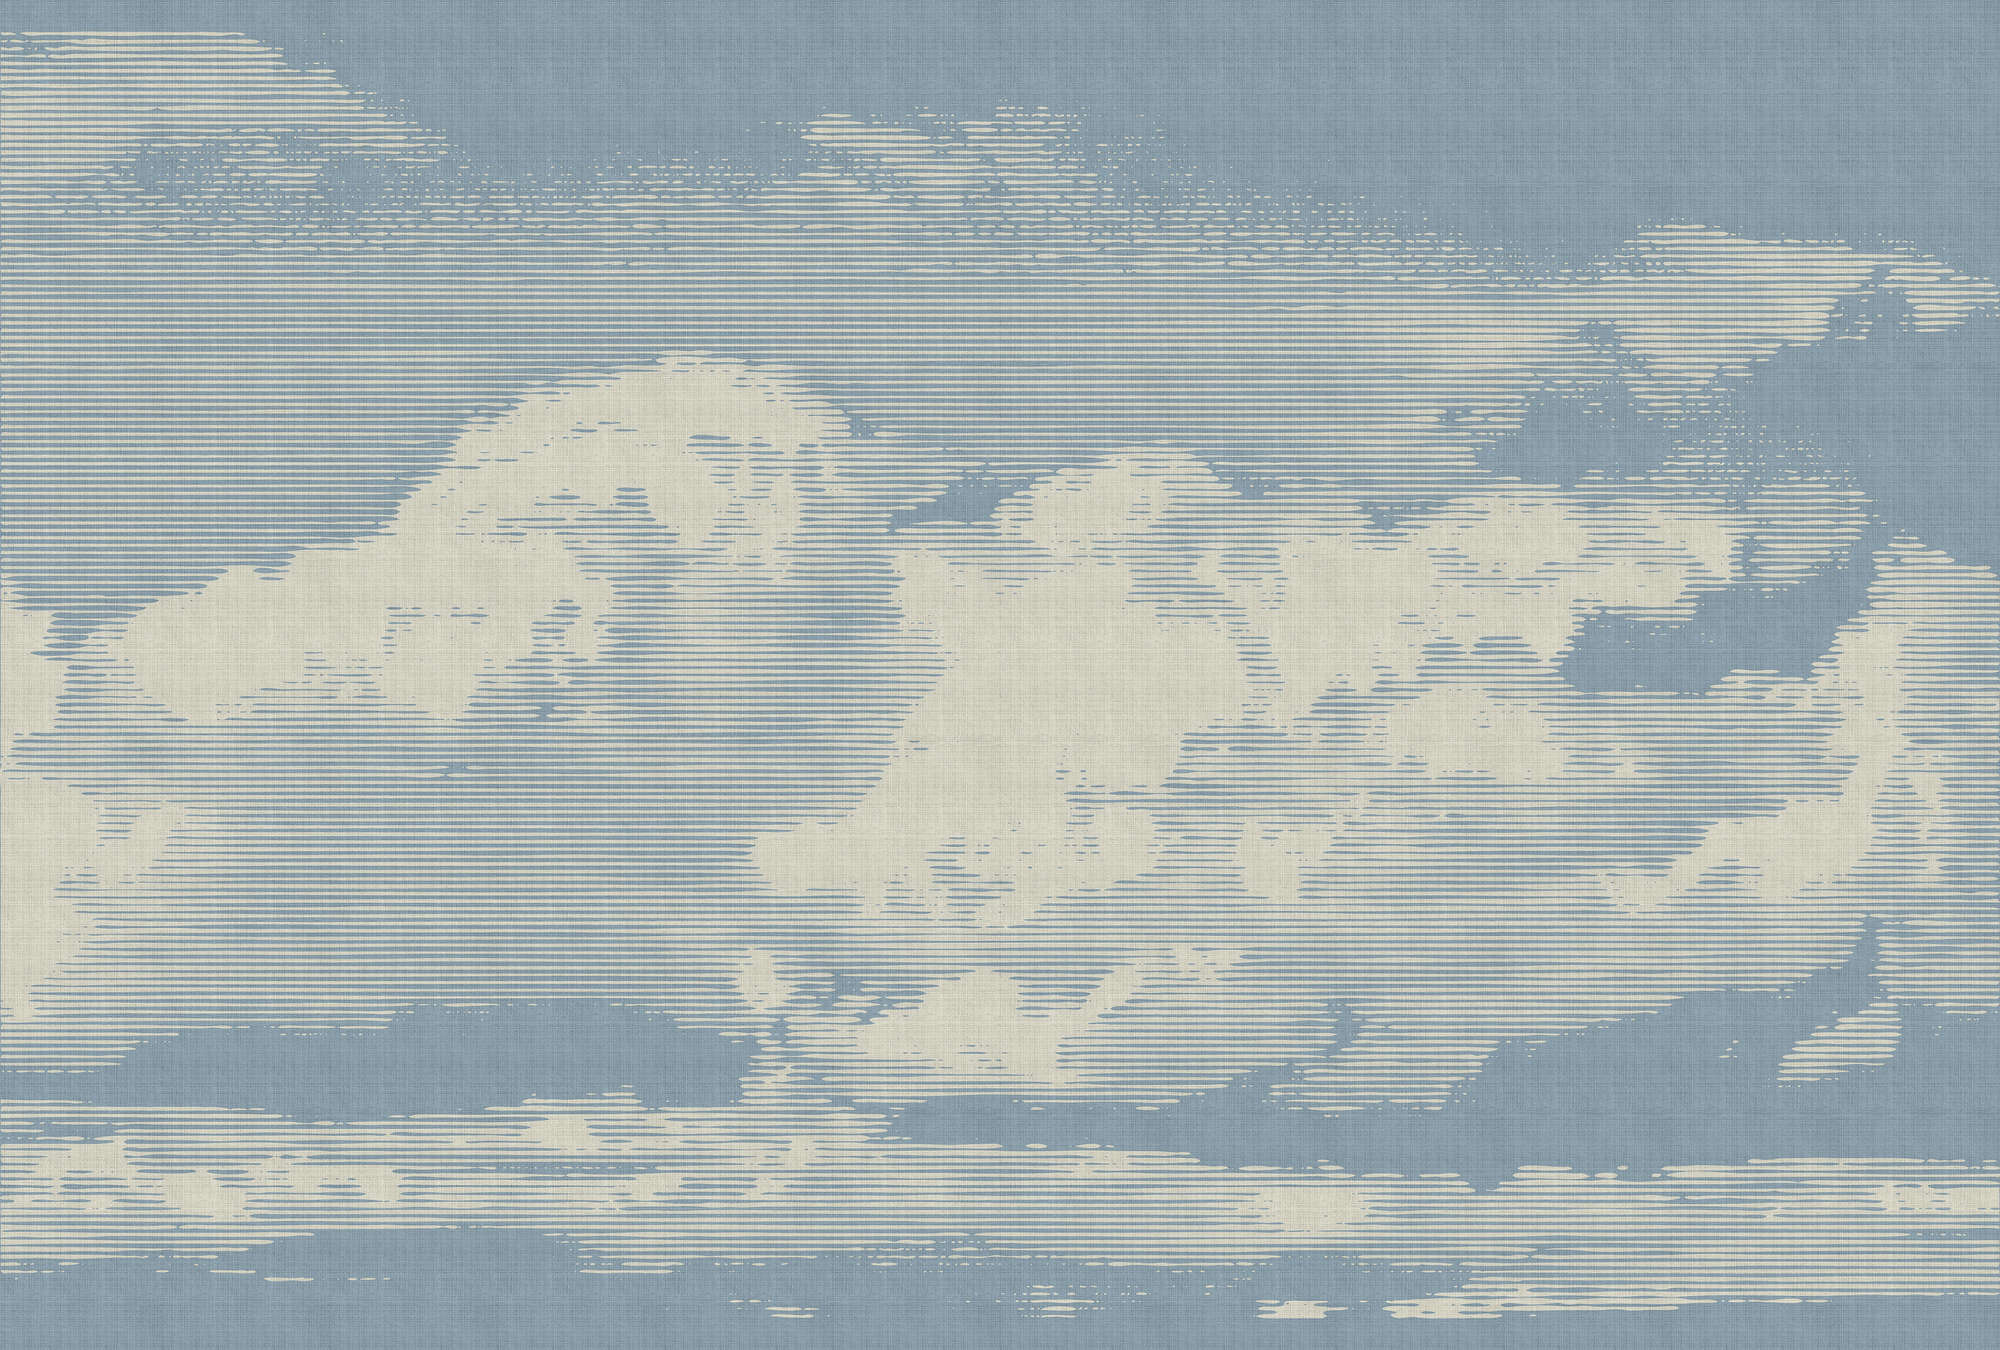             Clouds 1 - Hemels fotobehang met wolkenmotief in natuurlijke linnenstructuur - Beige, Blauw | Premium glad vlies
        